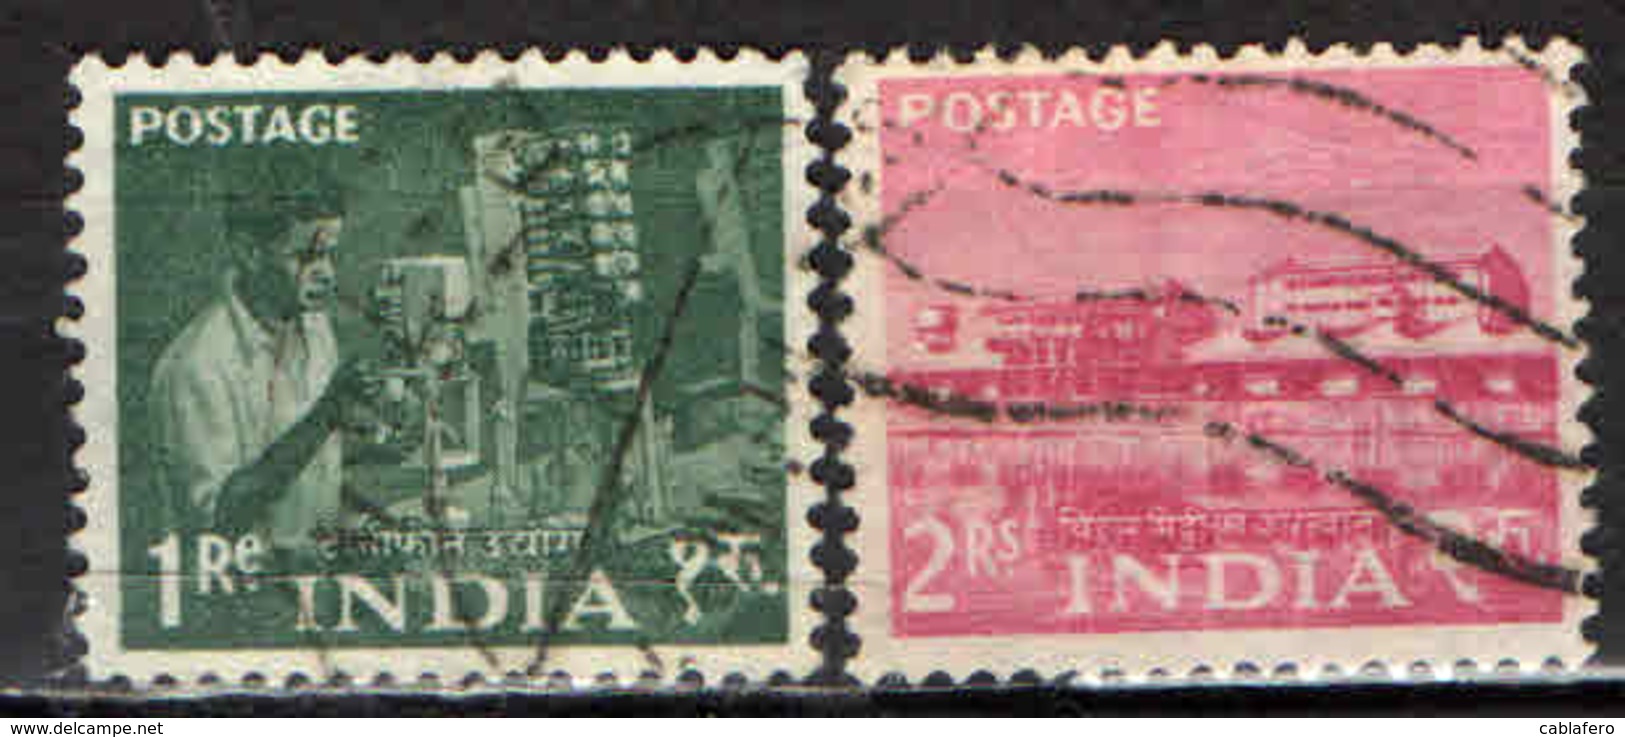 INDIA - 1959 - IL LAVORO IN INDIA - USATI - Usati